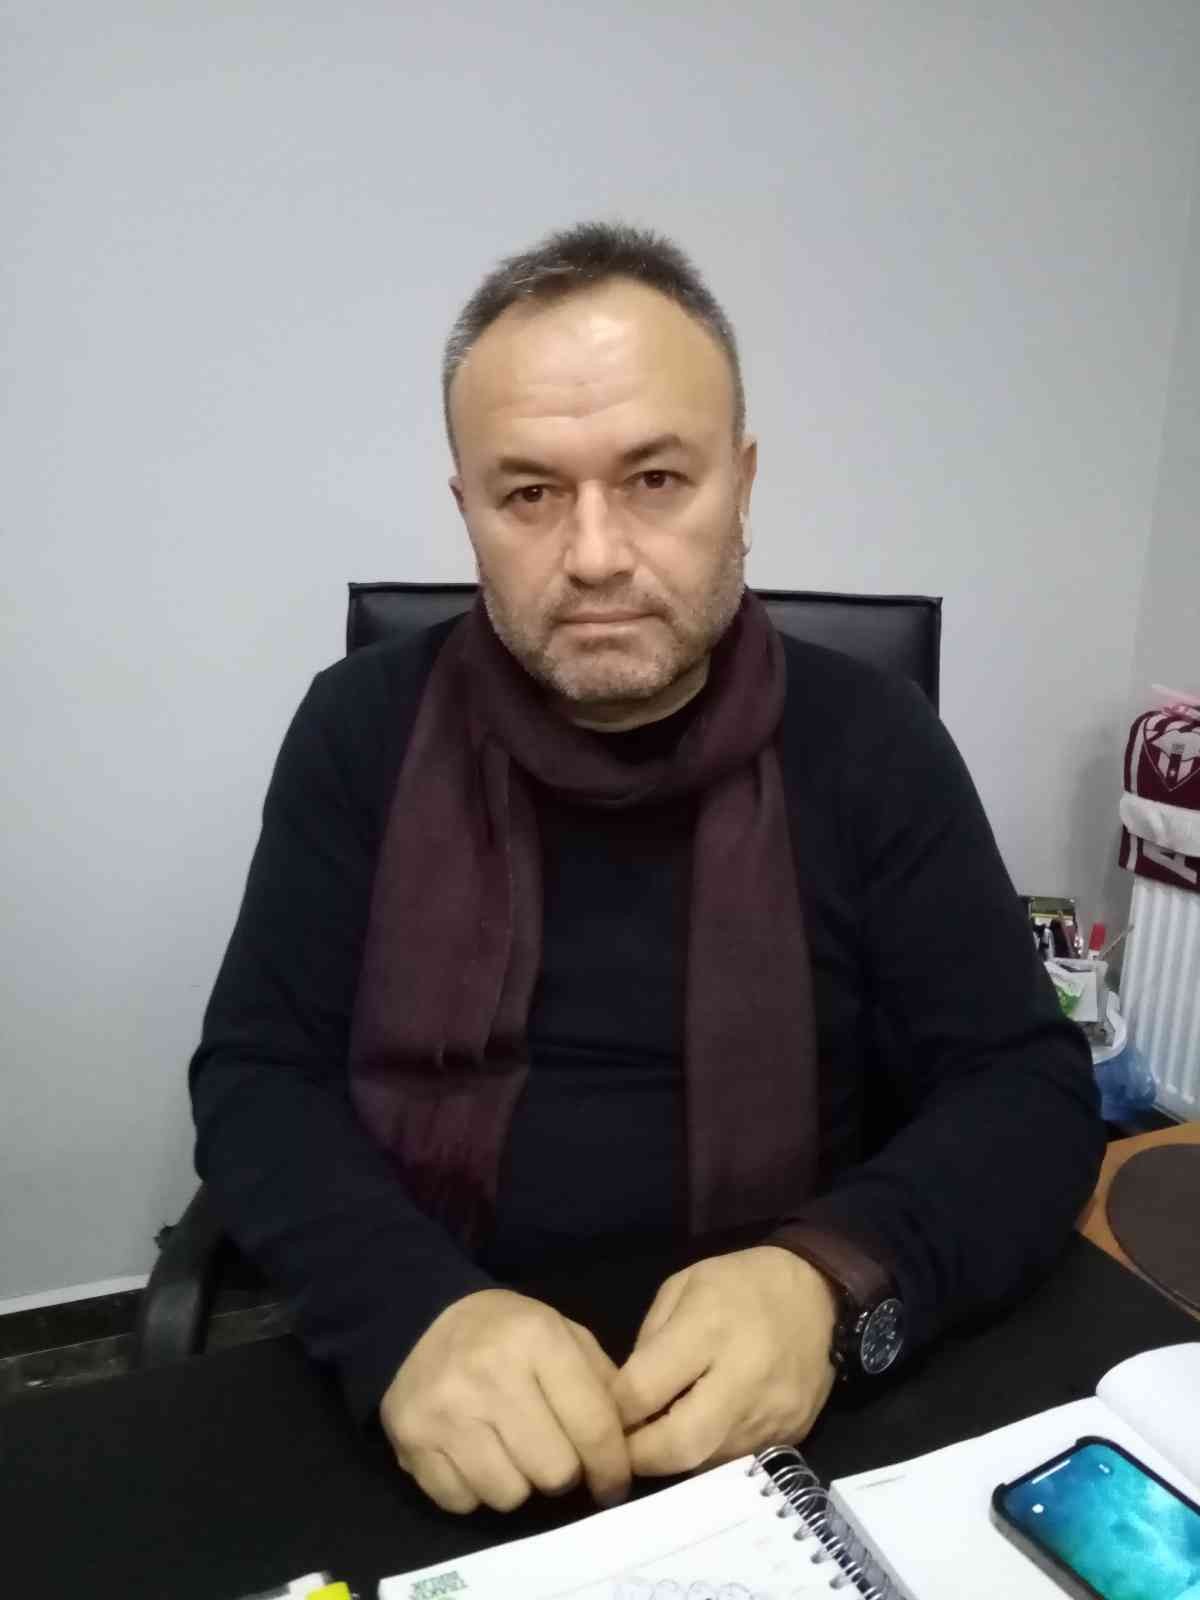 Bandırmaspor Basın Sözcüsü Özel Aydın: Menemende büyük tehlike atlattık #balikesir